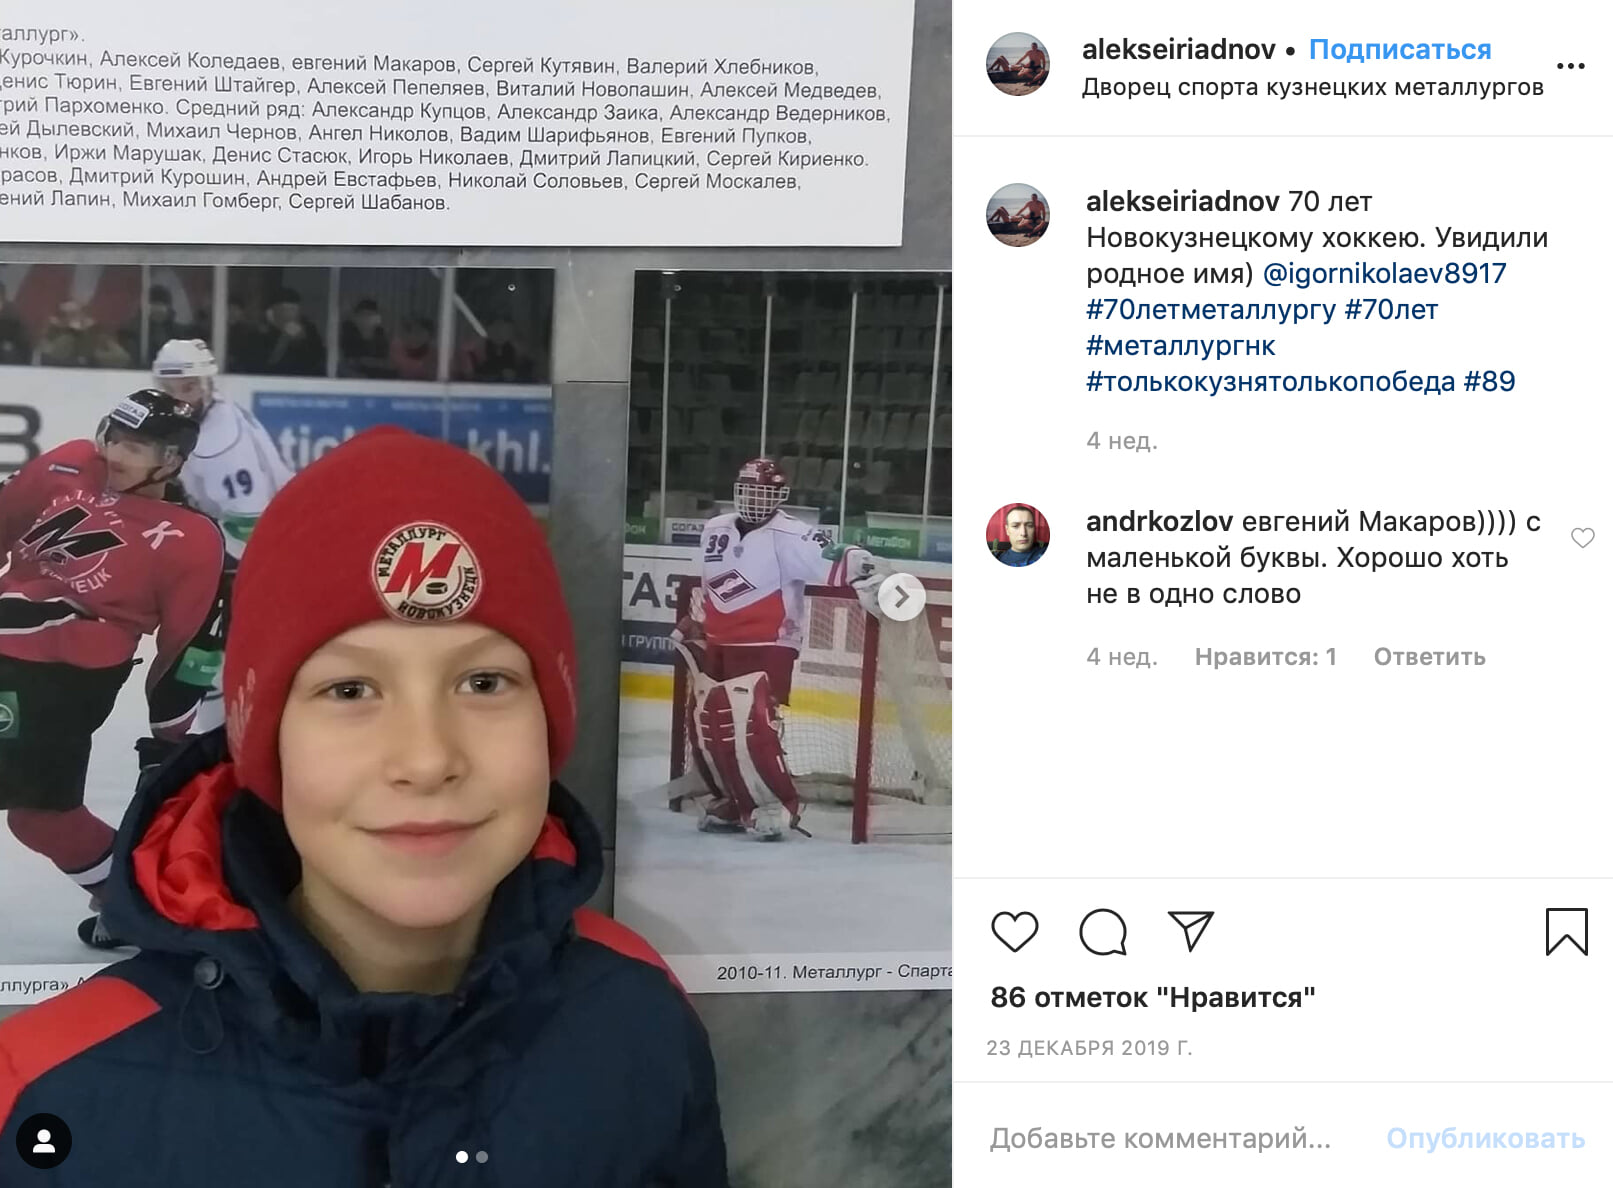 Почему уволили тренера. Николаев агент хоккейный.